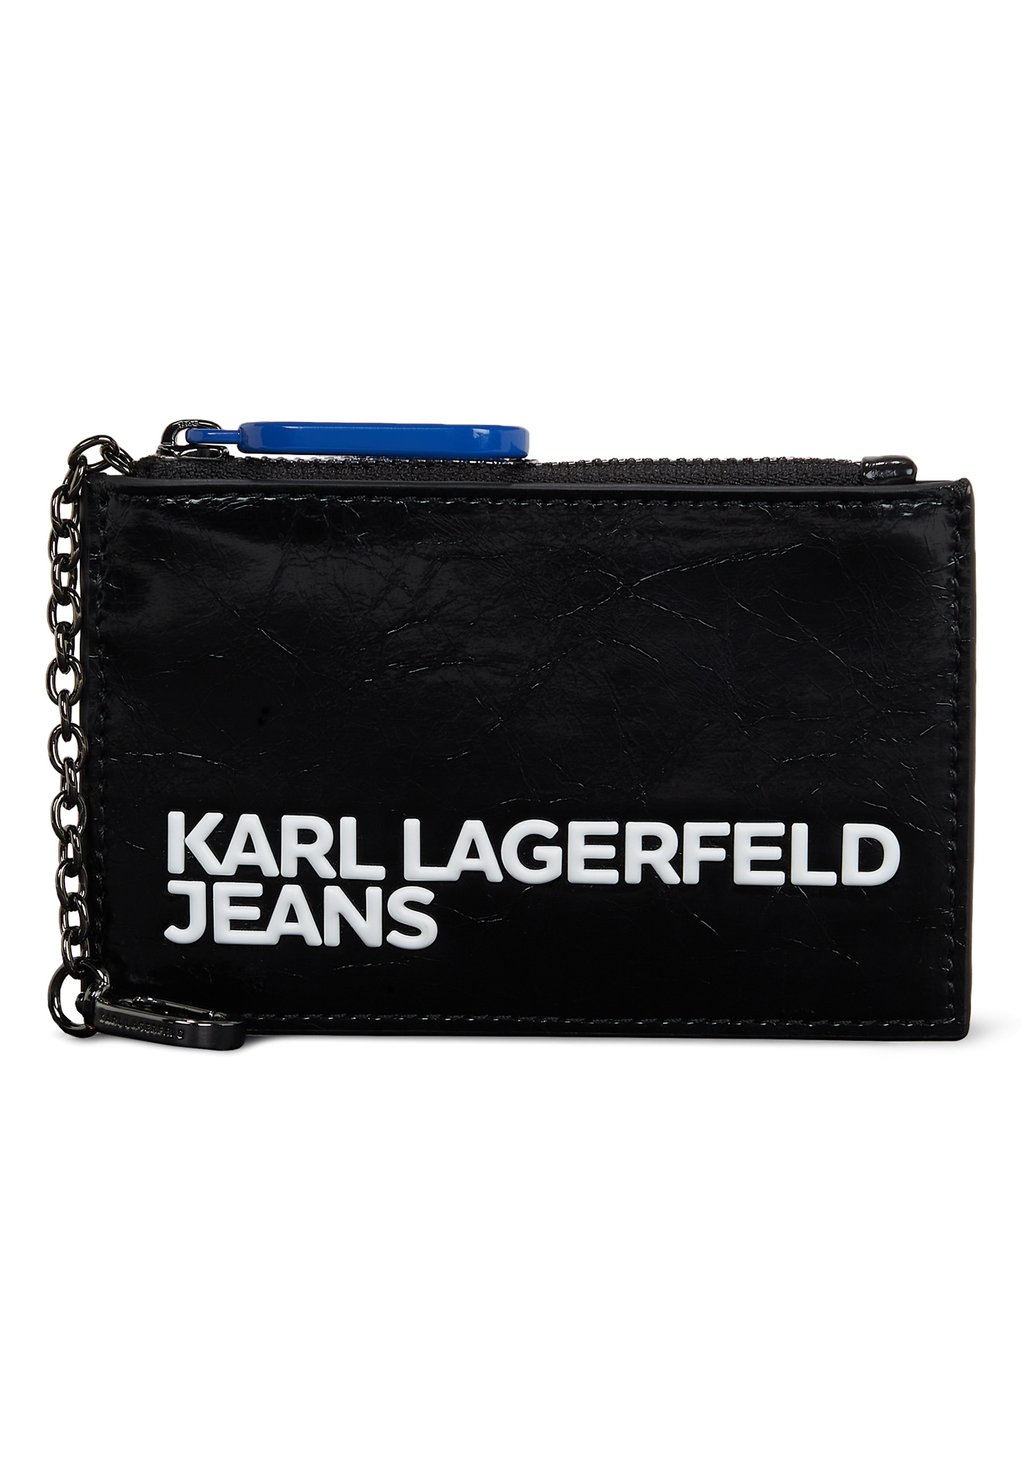 Кошелек Karl Lagerfeld Jeans, черный